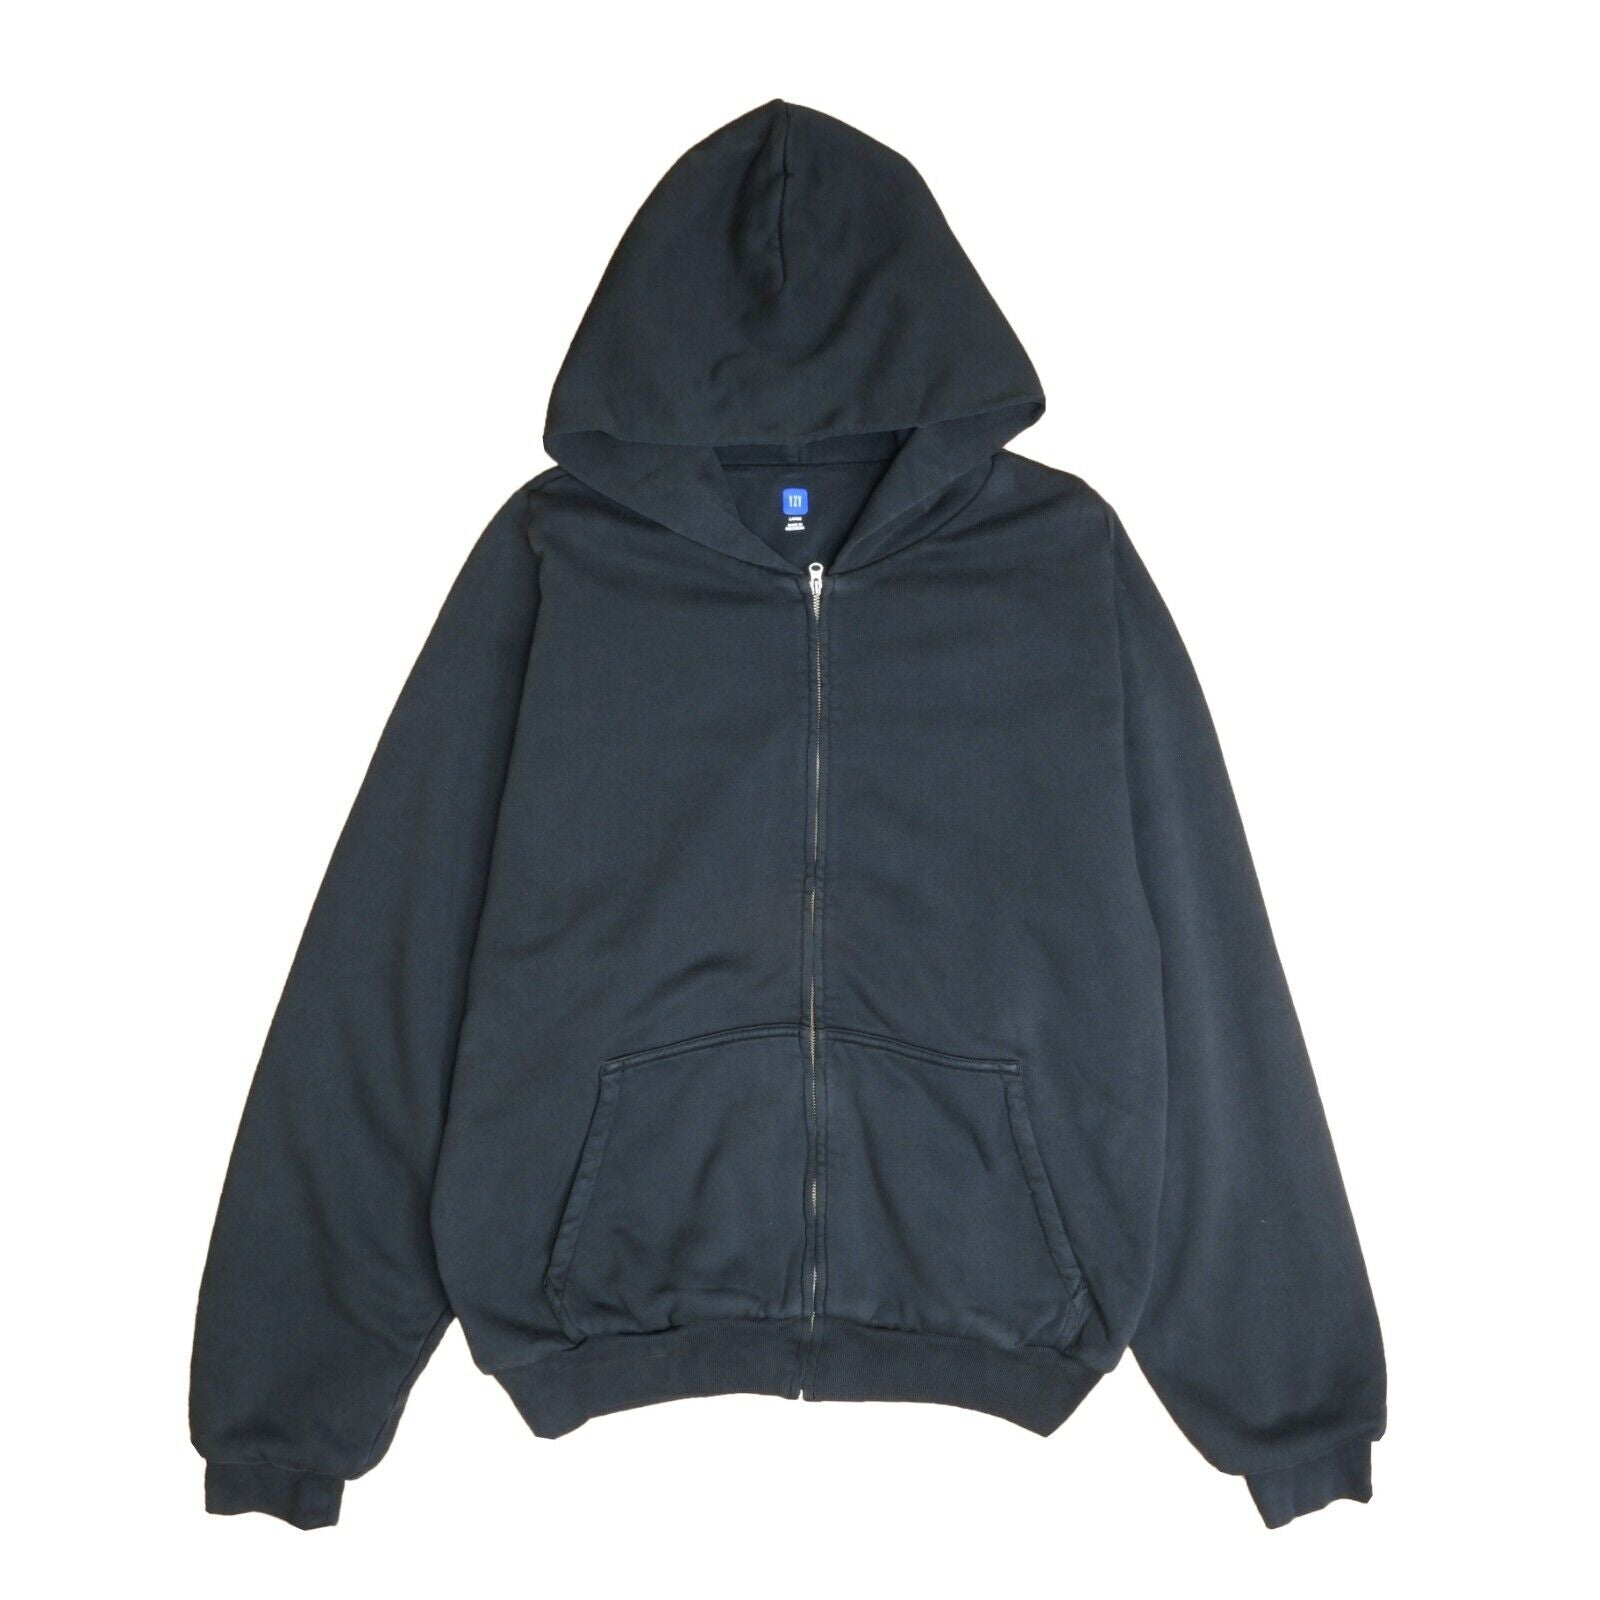 Yeezy Gap Unreleased Zip Sweatshirt Hoodie Size Large Black